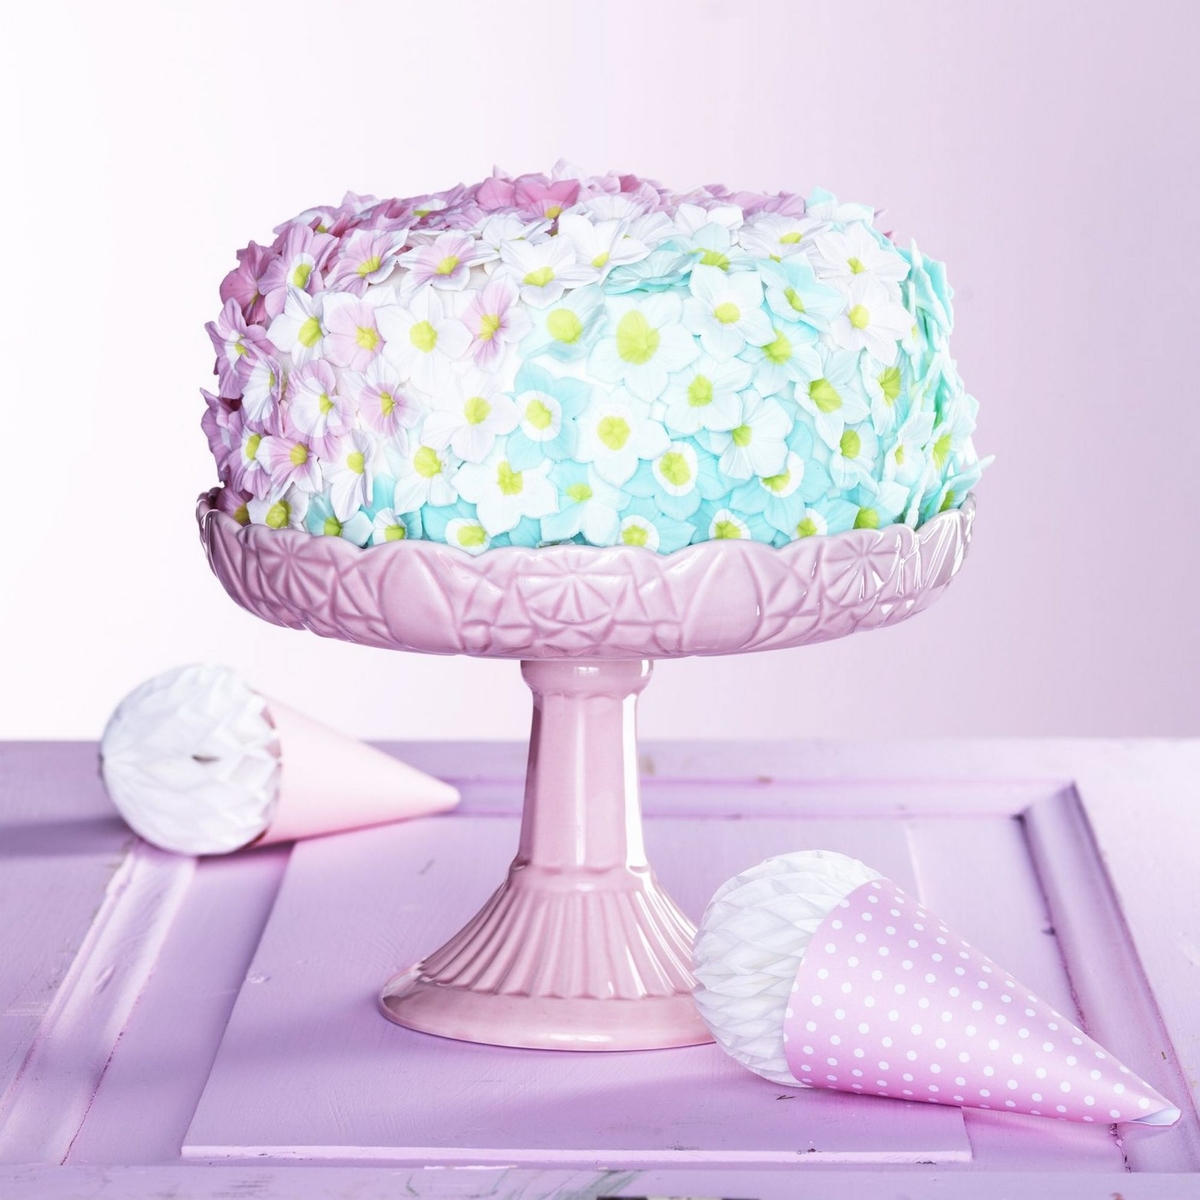 Tårta i pastell